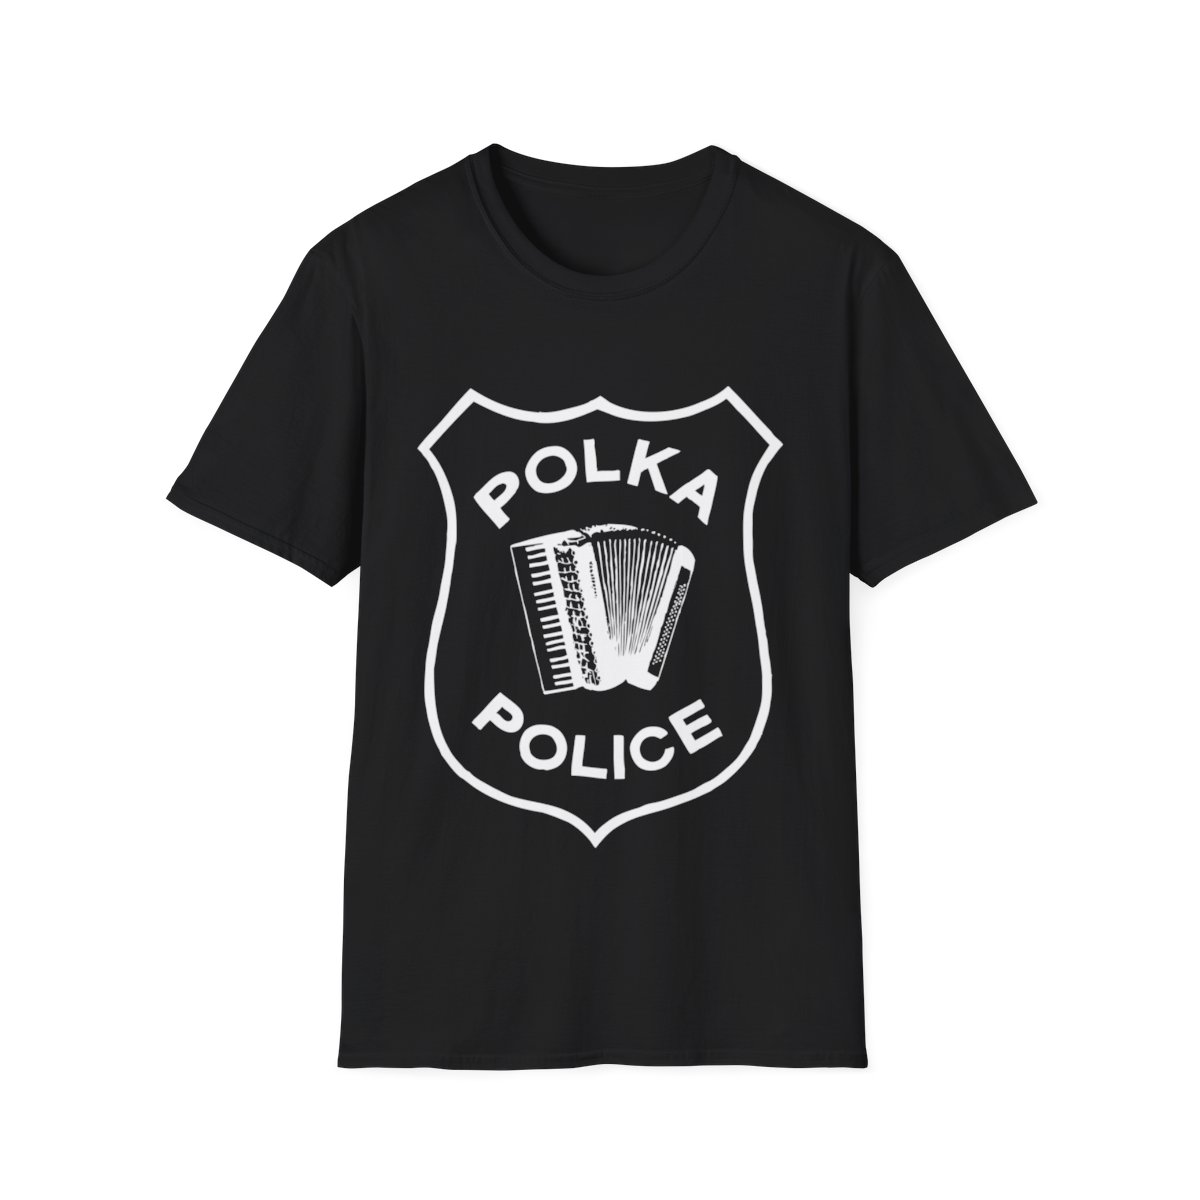 Polka Police Badge - Unisex Softstyle T-Shirt product main image